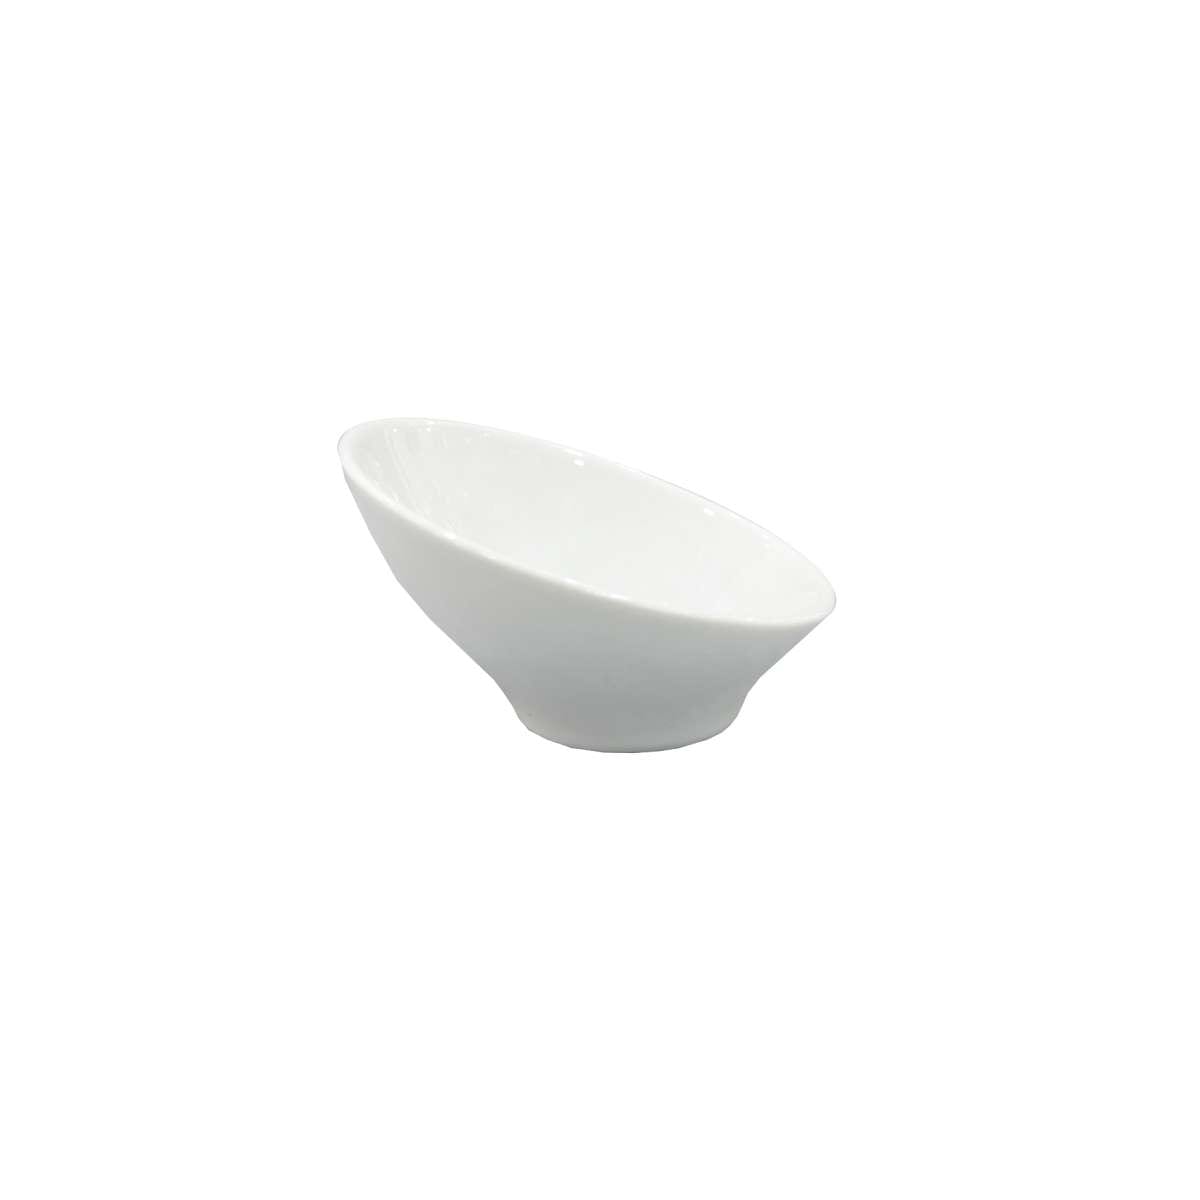 Μπωλ-Ντιπ Πορσελάνης Design Λευκό Art Et Lumiere 8,5x2,5/5εκ. 06930 (Σετ 4 Τεμάχια) (Υλικό: Πορσελάνη, Χρώμα: Λευκό) - Art Et Lumiere - lumiere_06930